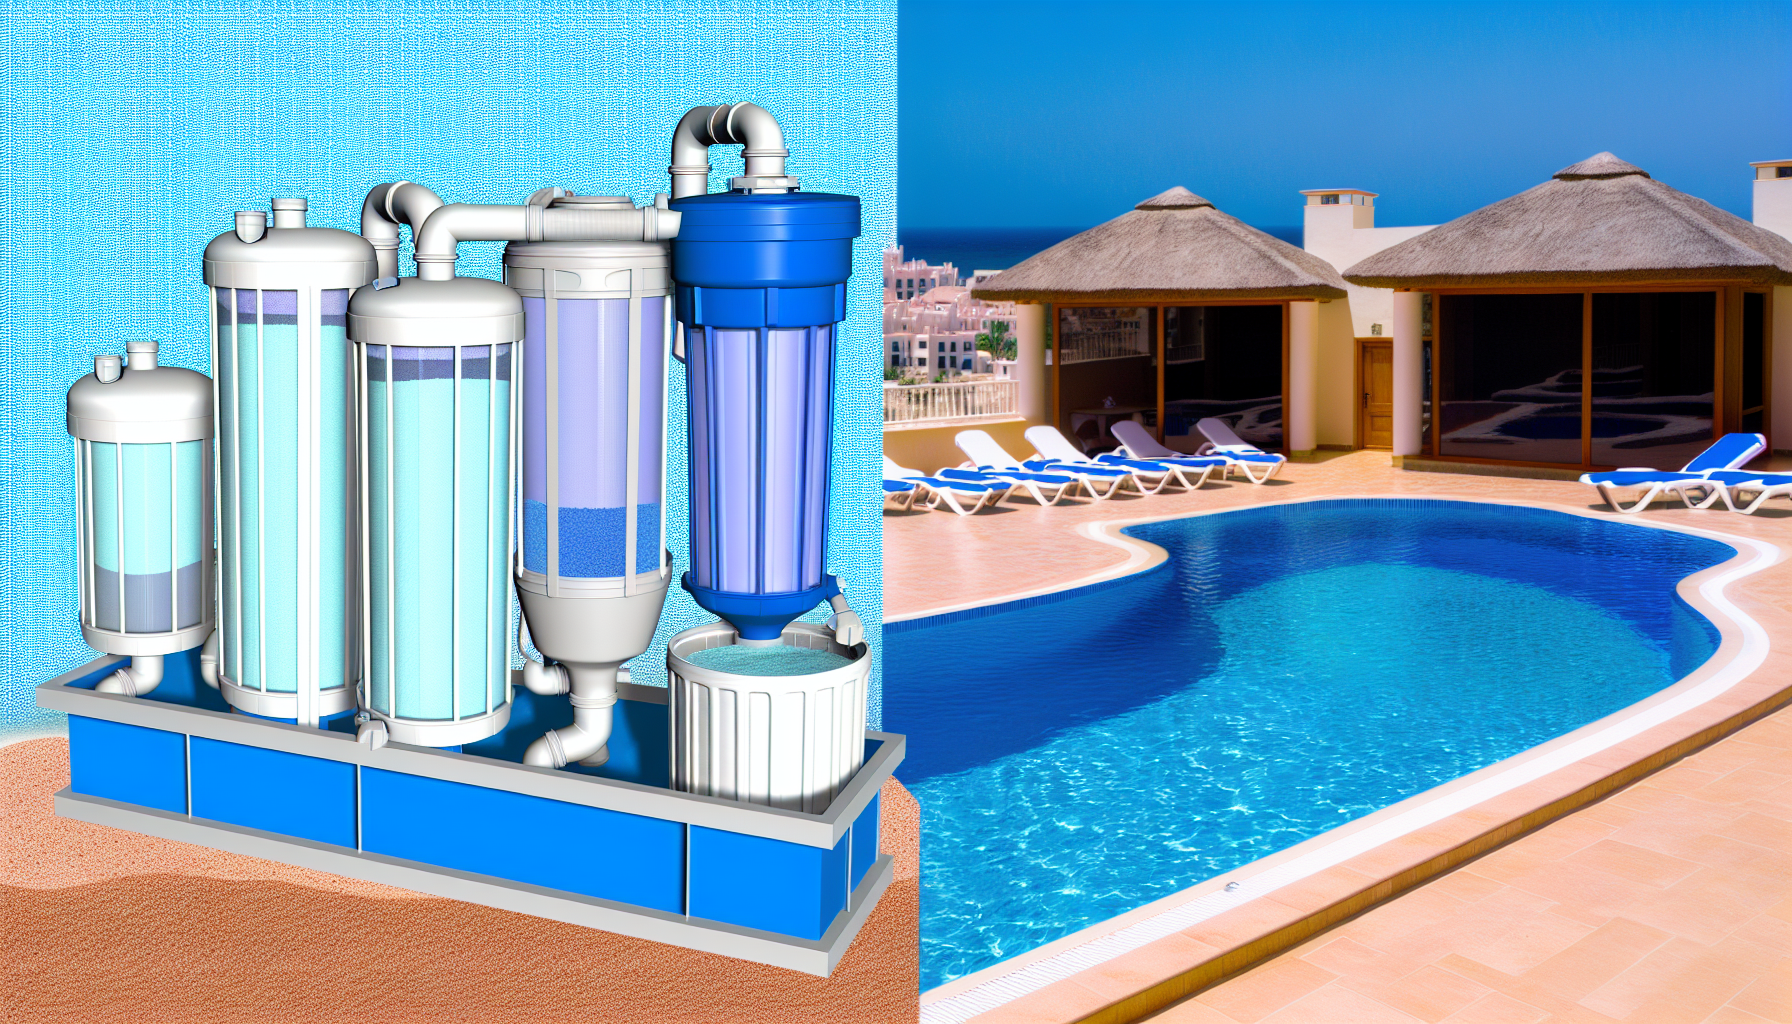 Split-view-Darstellung einer Wasseraufbereitungsanlage und eines luxuriösen Poolbereichs in einem Ferienresort.